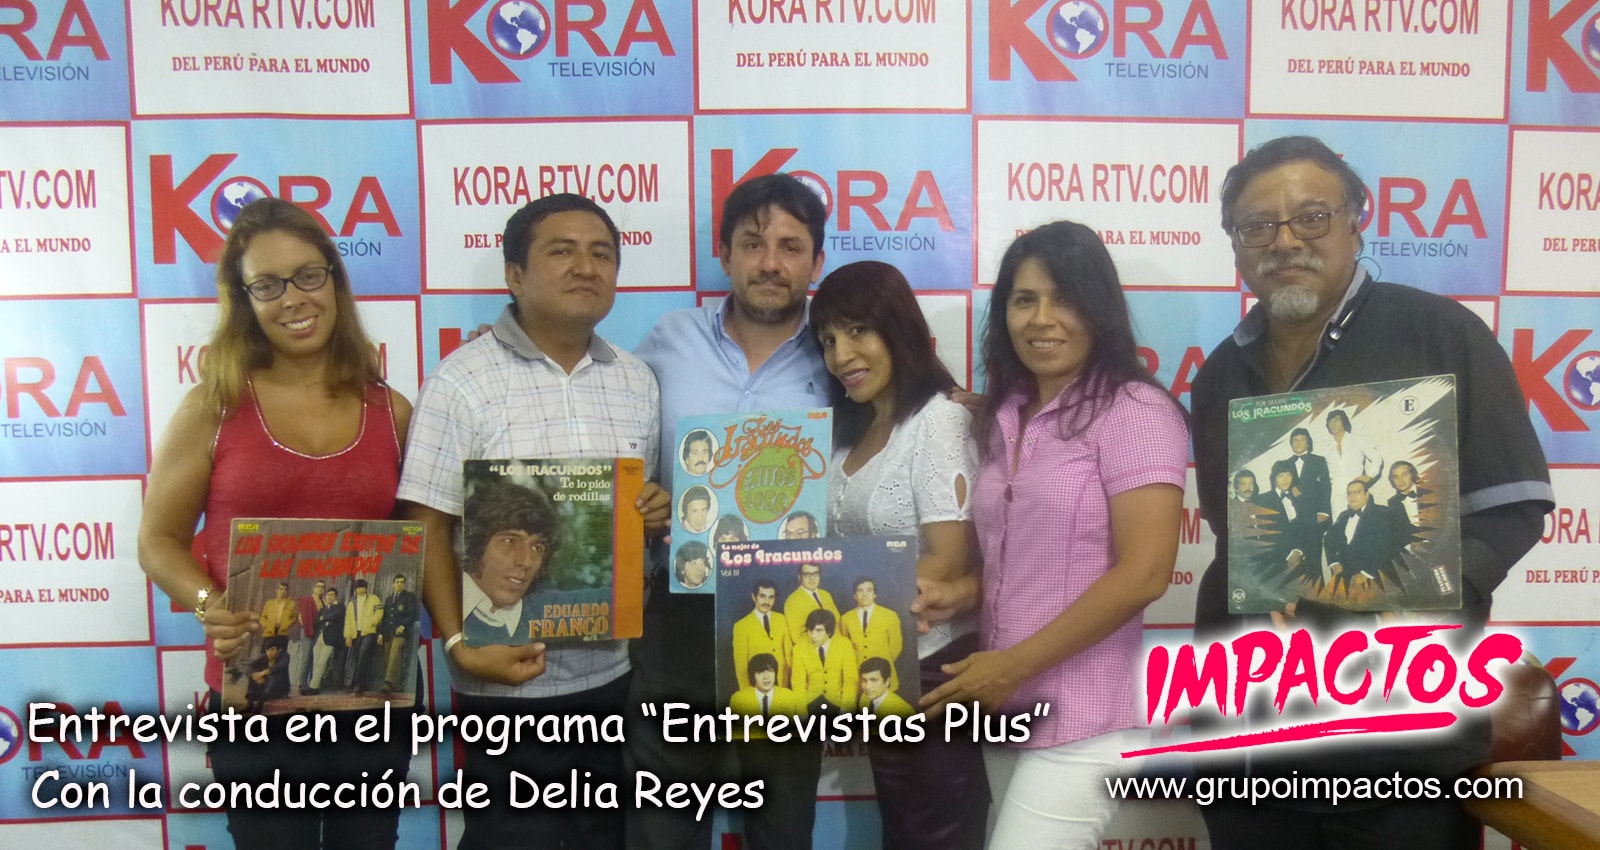 Grupo IMPACTOS entrevista a Jaime Pereda en Kora TV